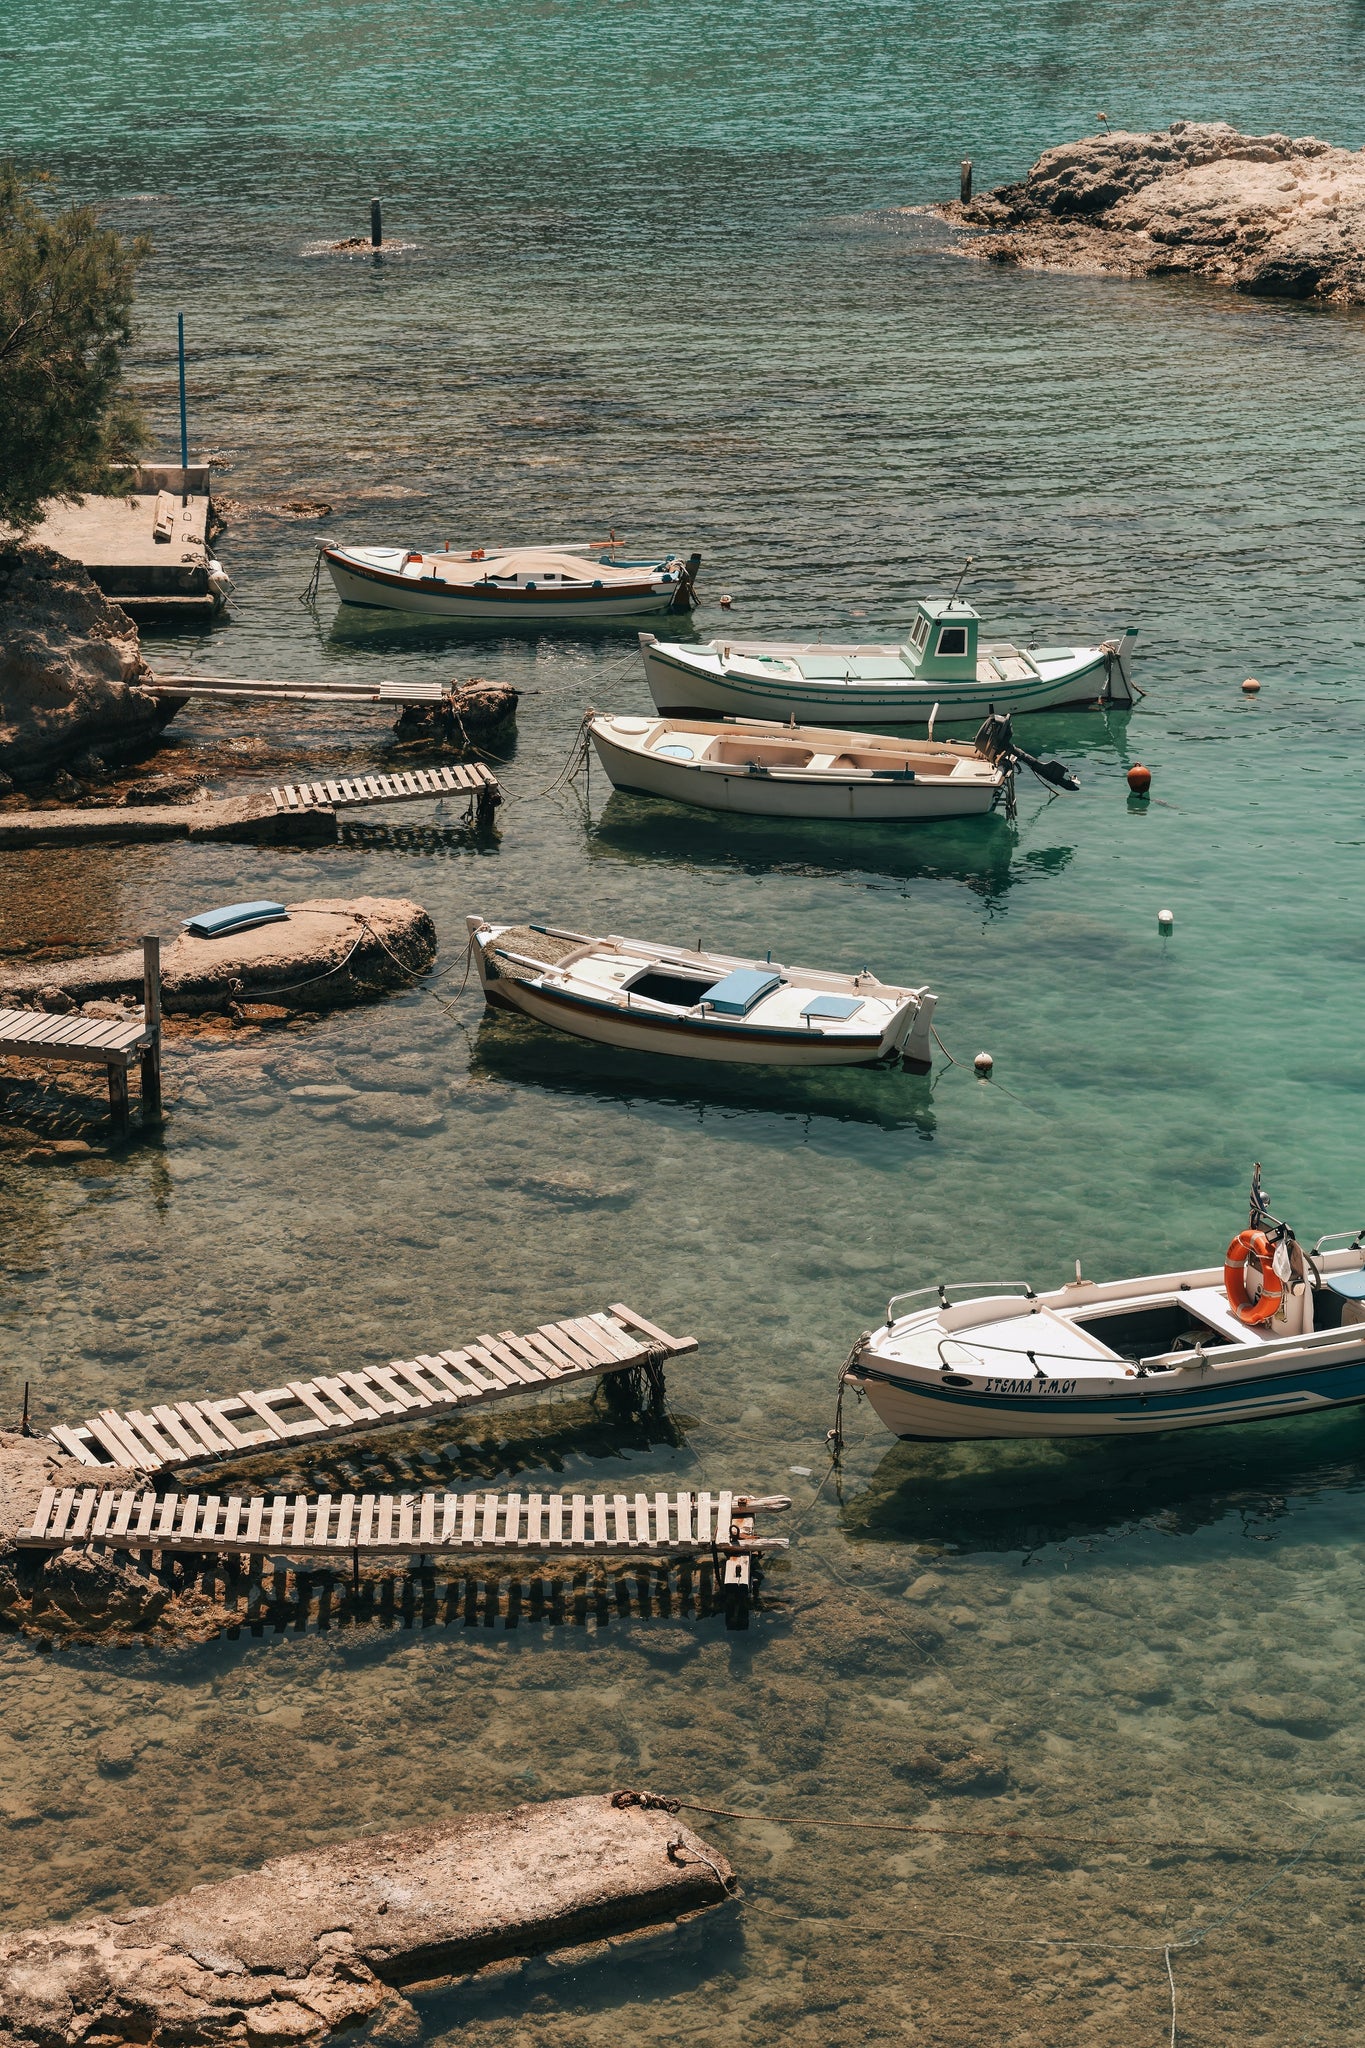 Boats in Milos